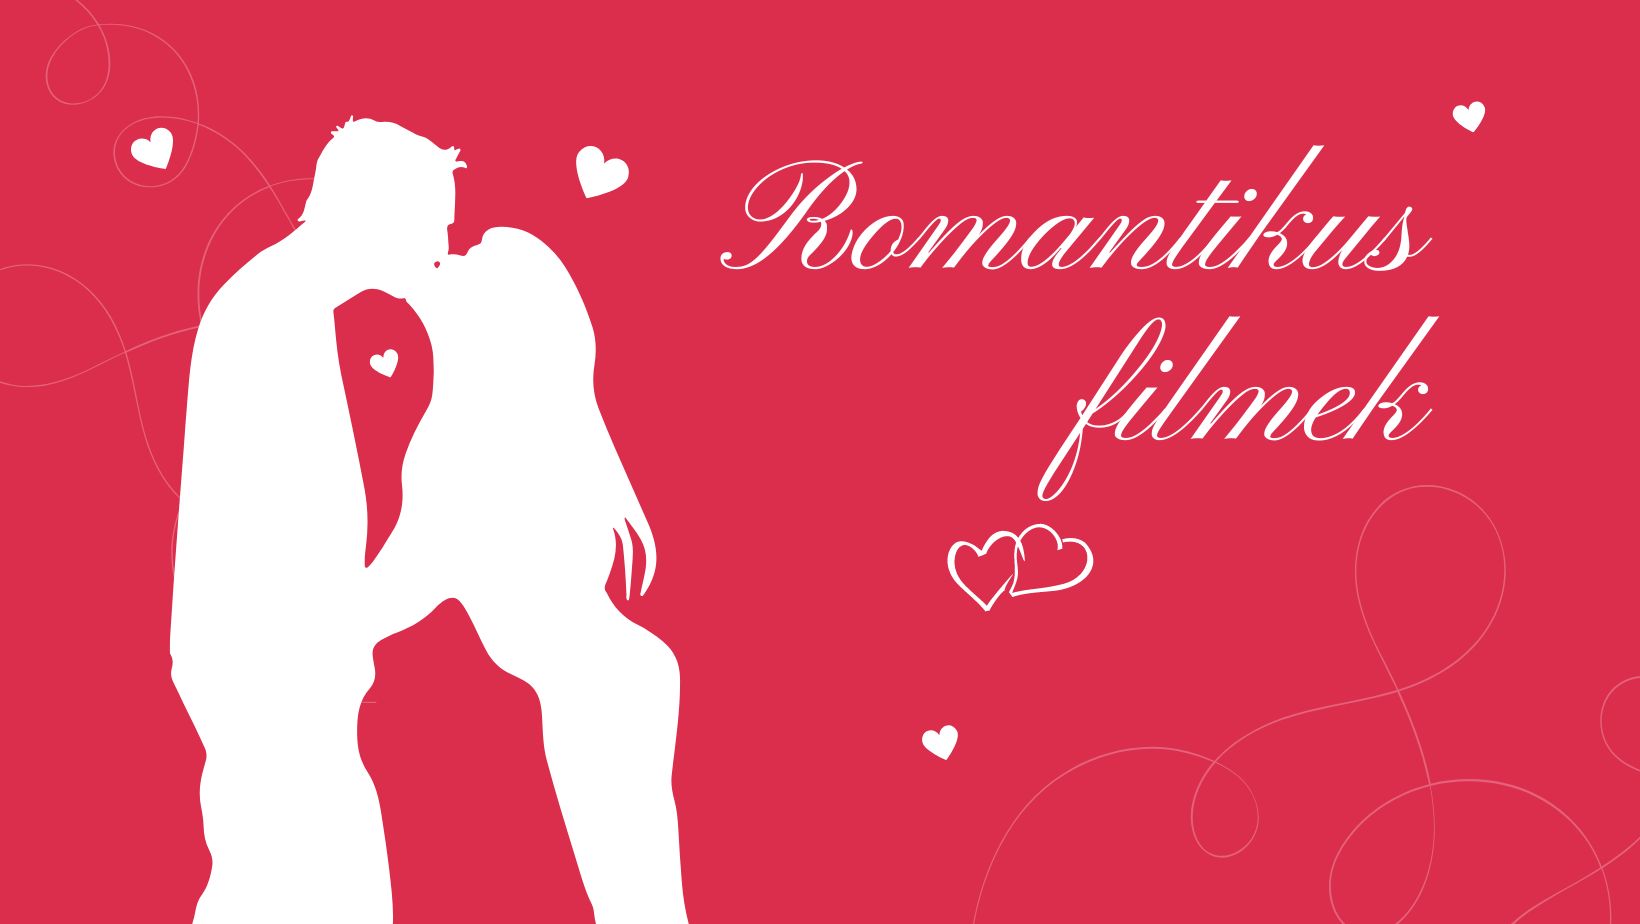 Romantikus filmek nem csak Valentin napra című cikk borítóképe